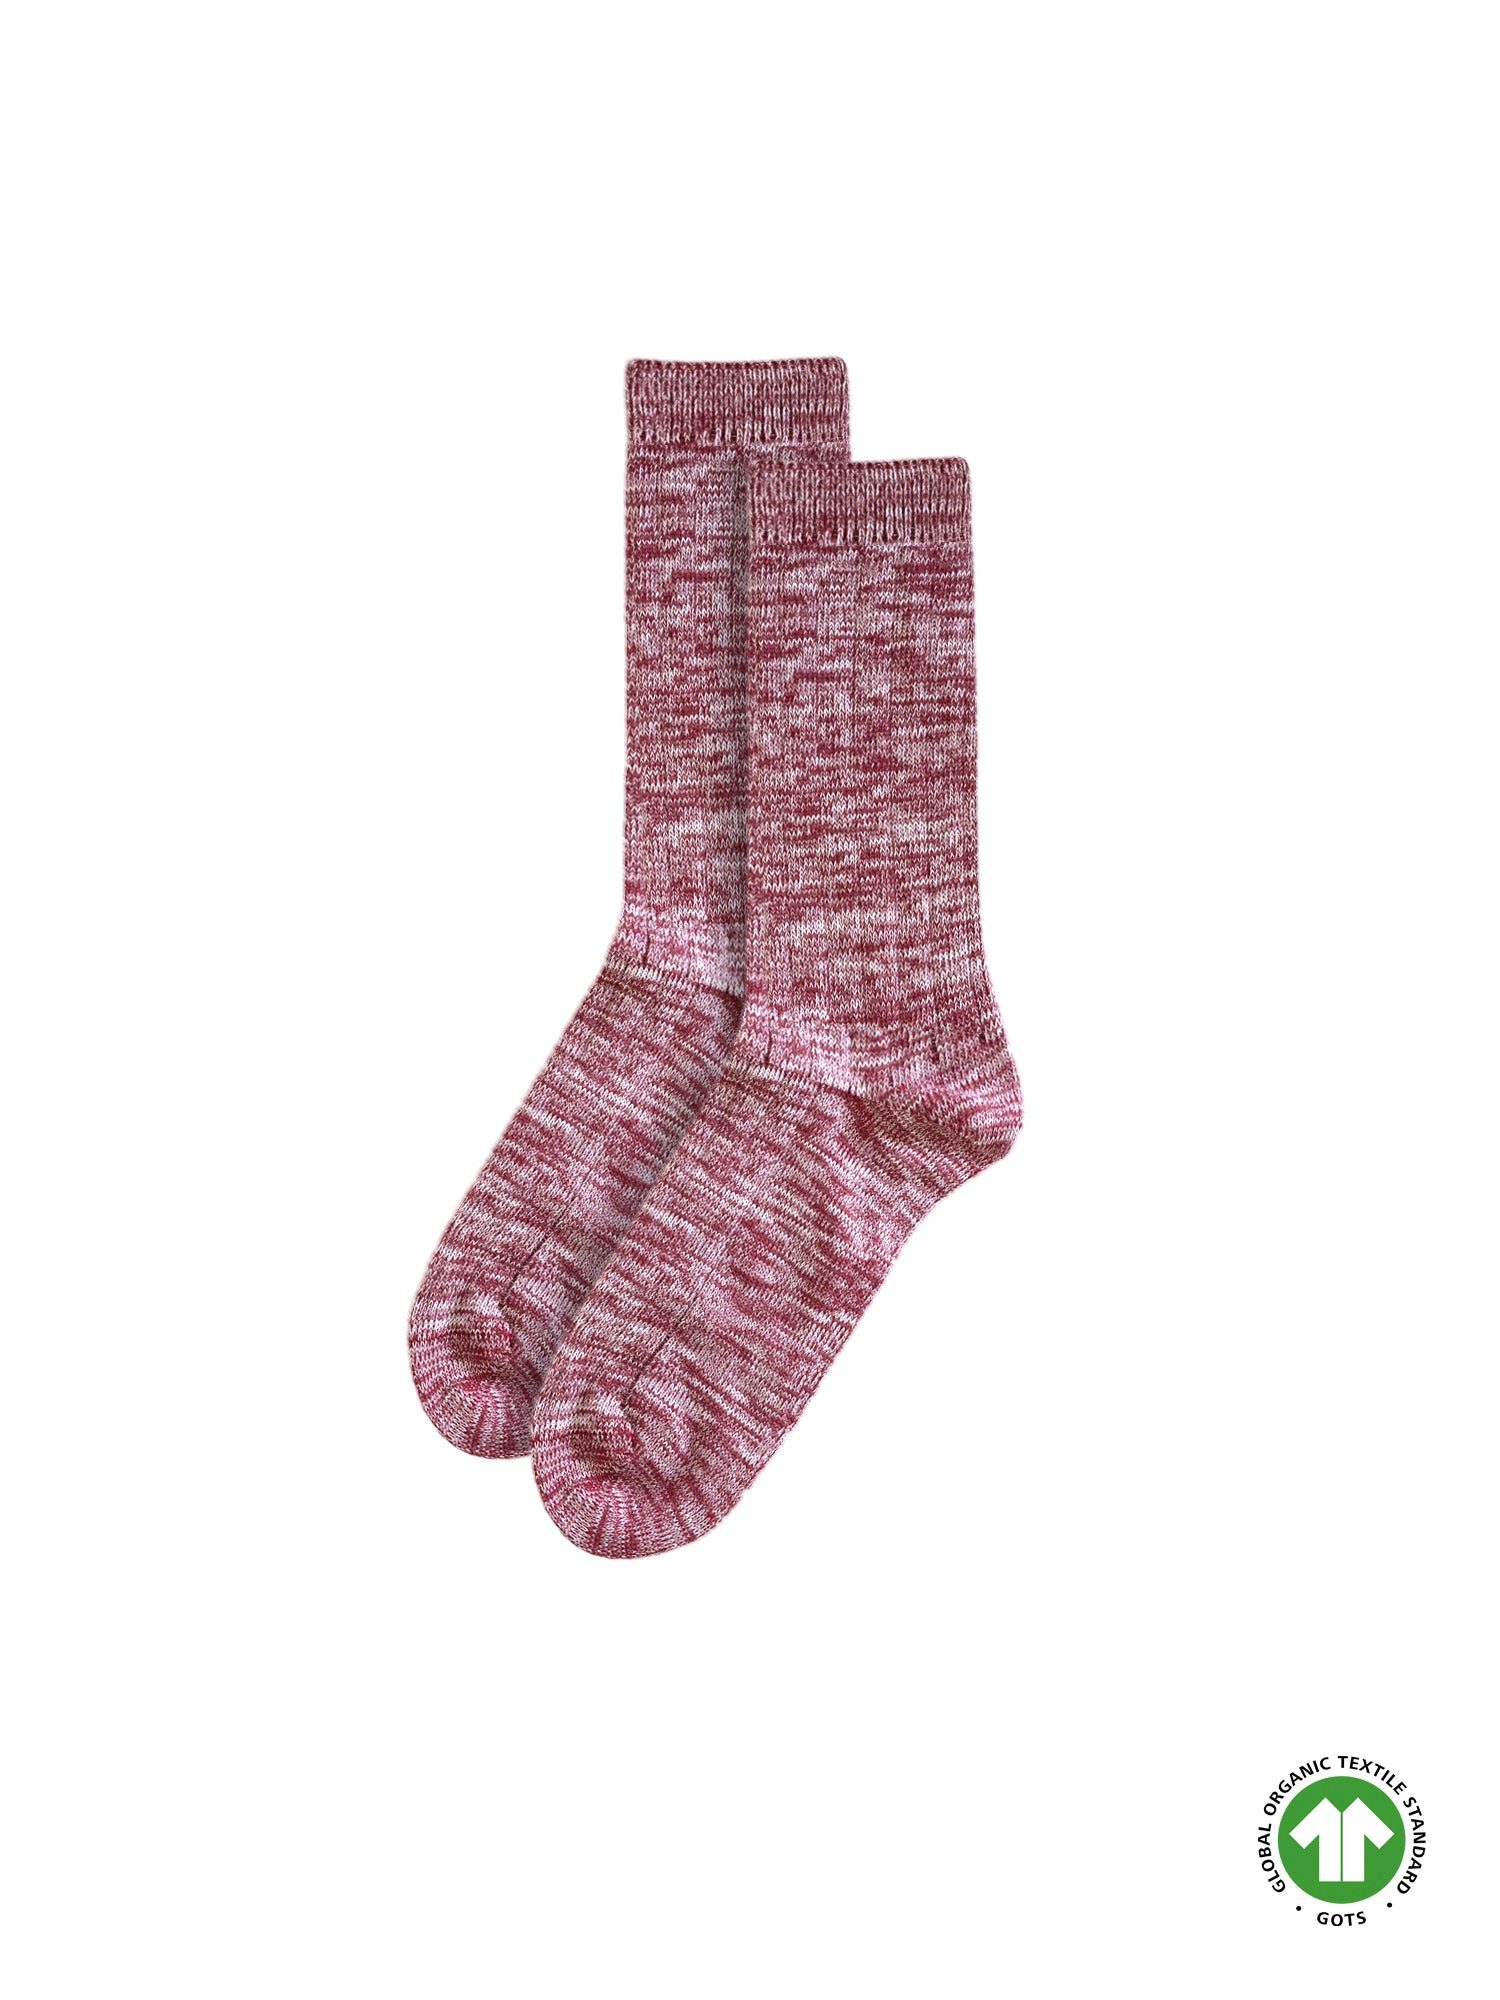 FUXBAU Socken Socken meliert GOTS, Biobaumwolle, Made in Portugal